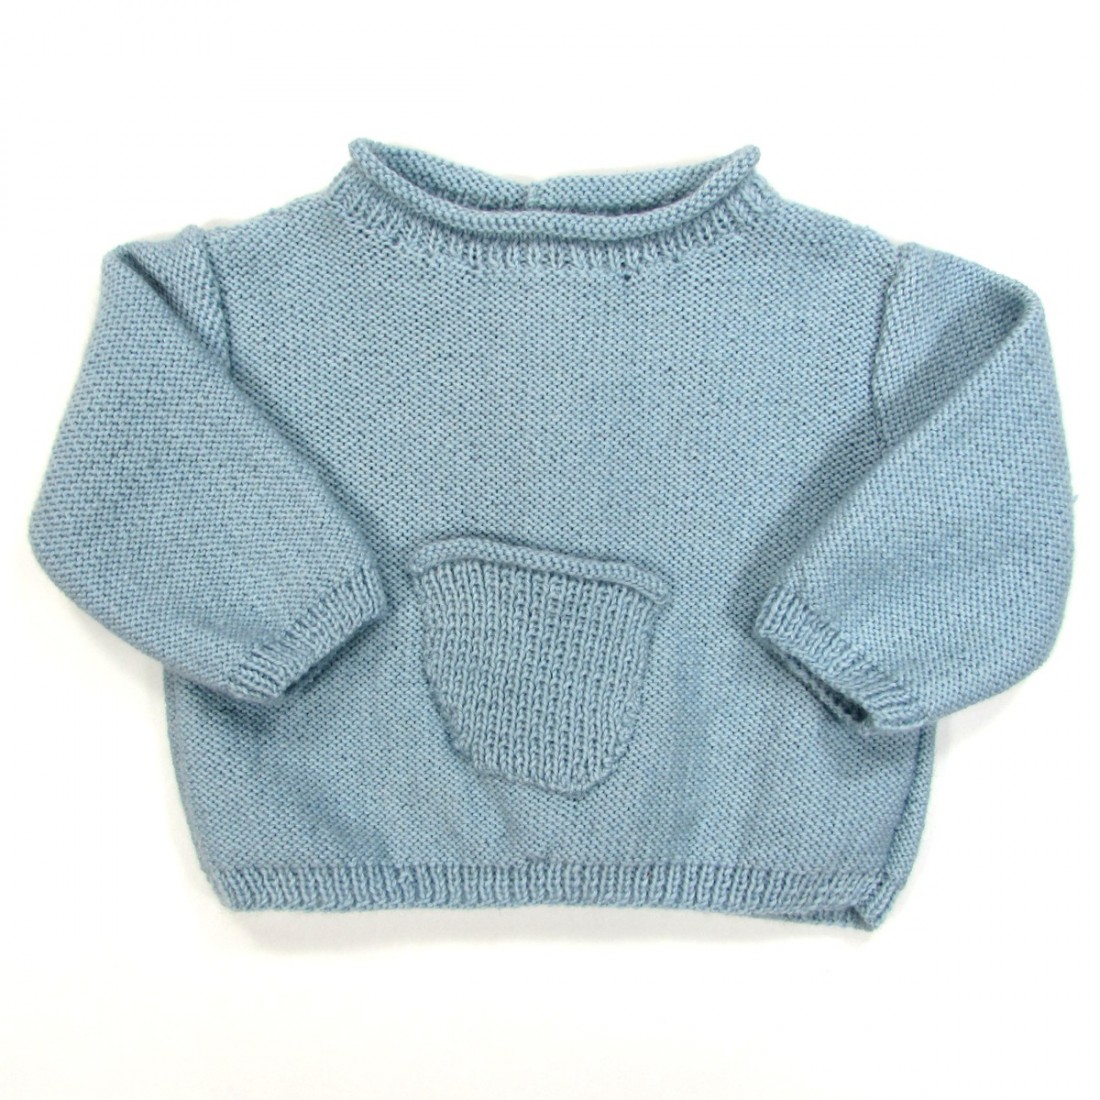 Brassière bébé garçon bleu ciel en tricot anti froid hiver